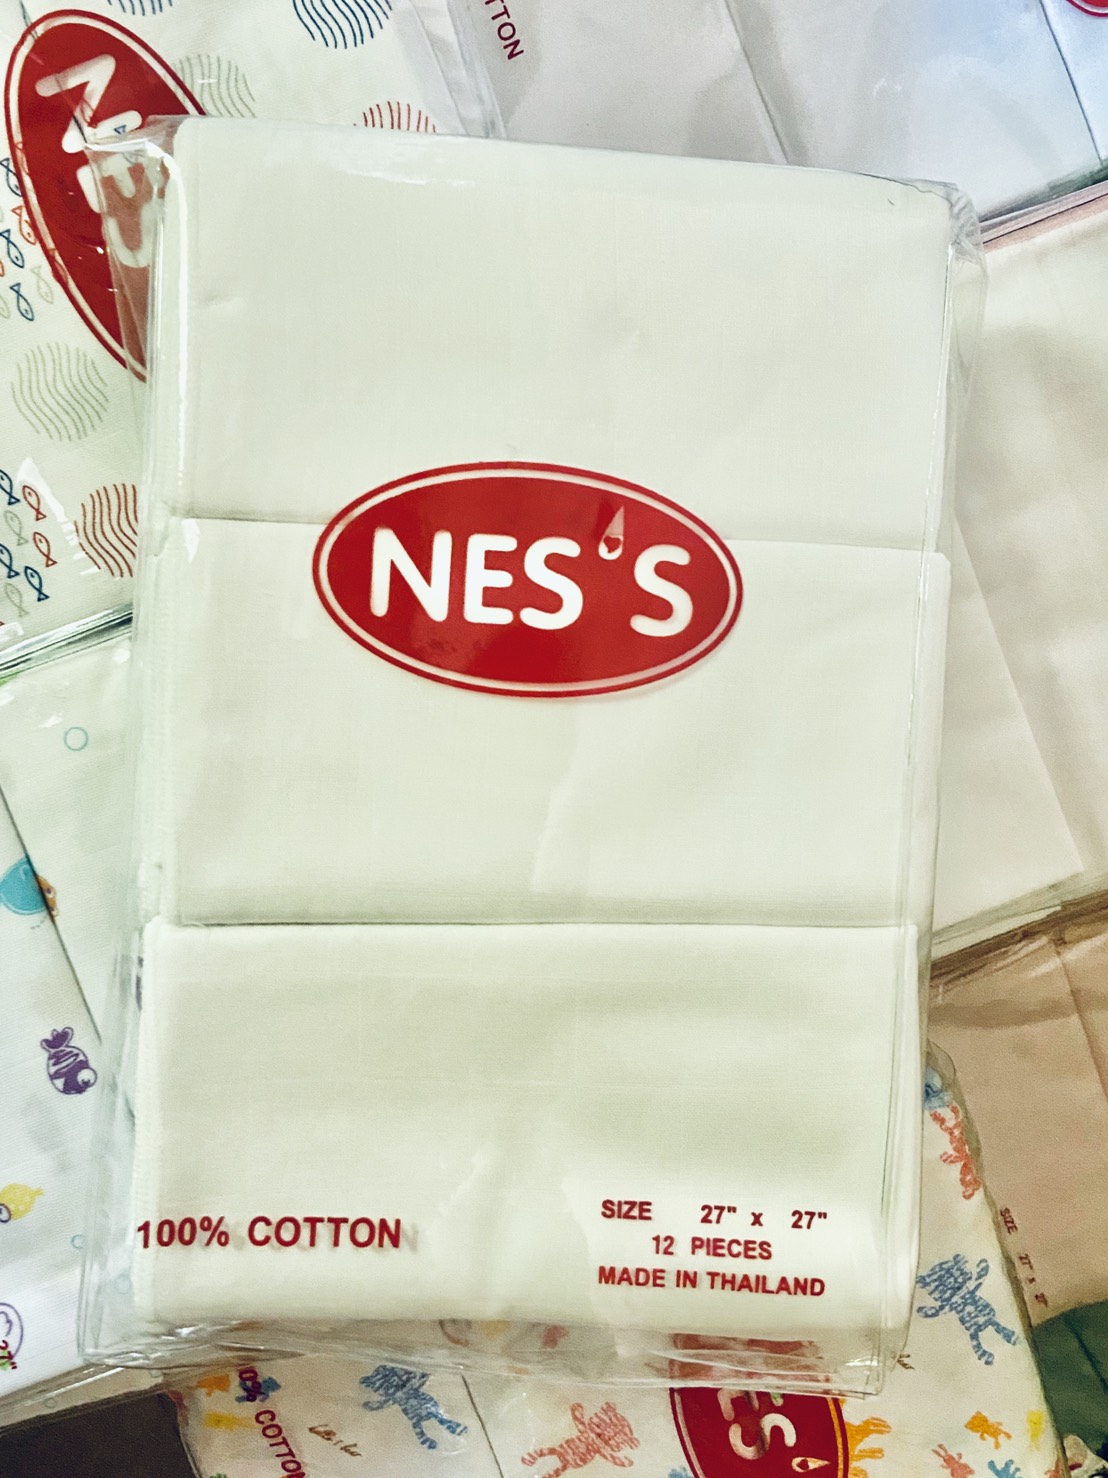 Nes's ผ้าอ้อมสาลูเนื้ออองฟอง 27นิ้ว เนื้อผ้าขาวขอบขาว แพคละ 12 ผืน